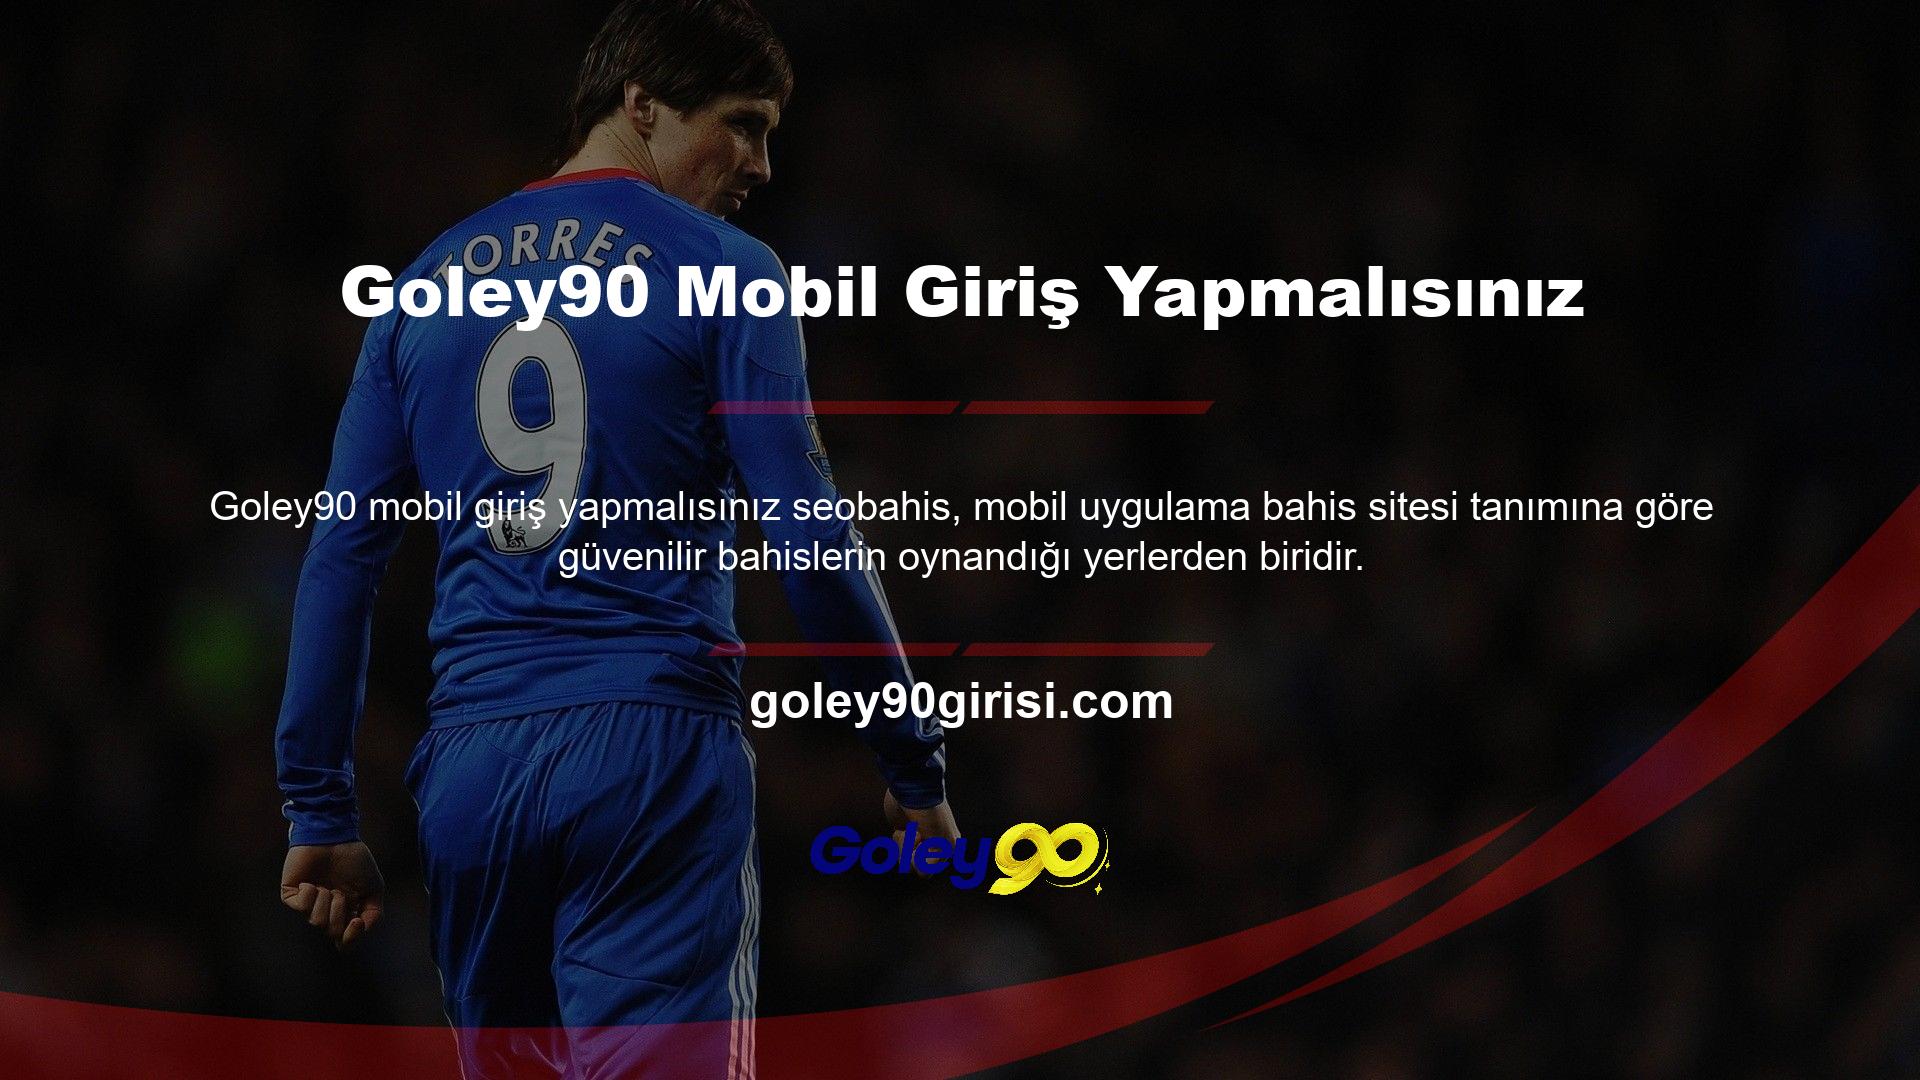 Goley90 mobil giriş adresinizi kullanarak da teklif verebilirsiniz